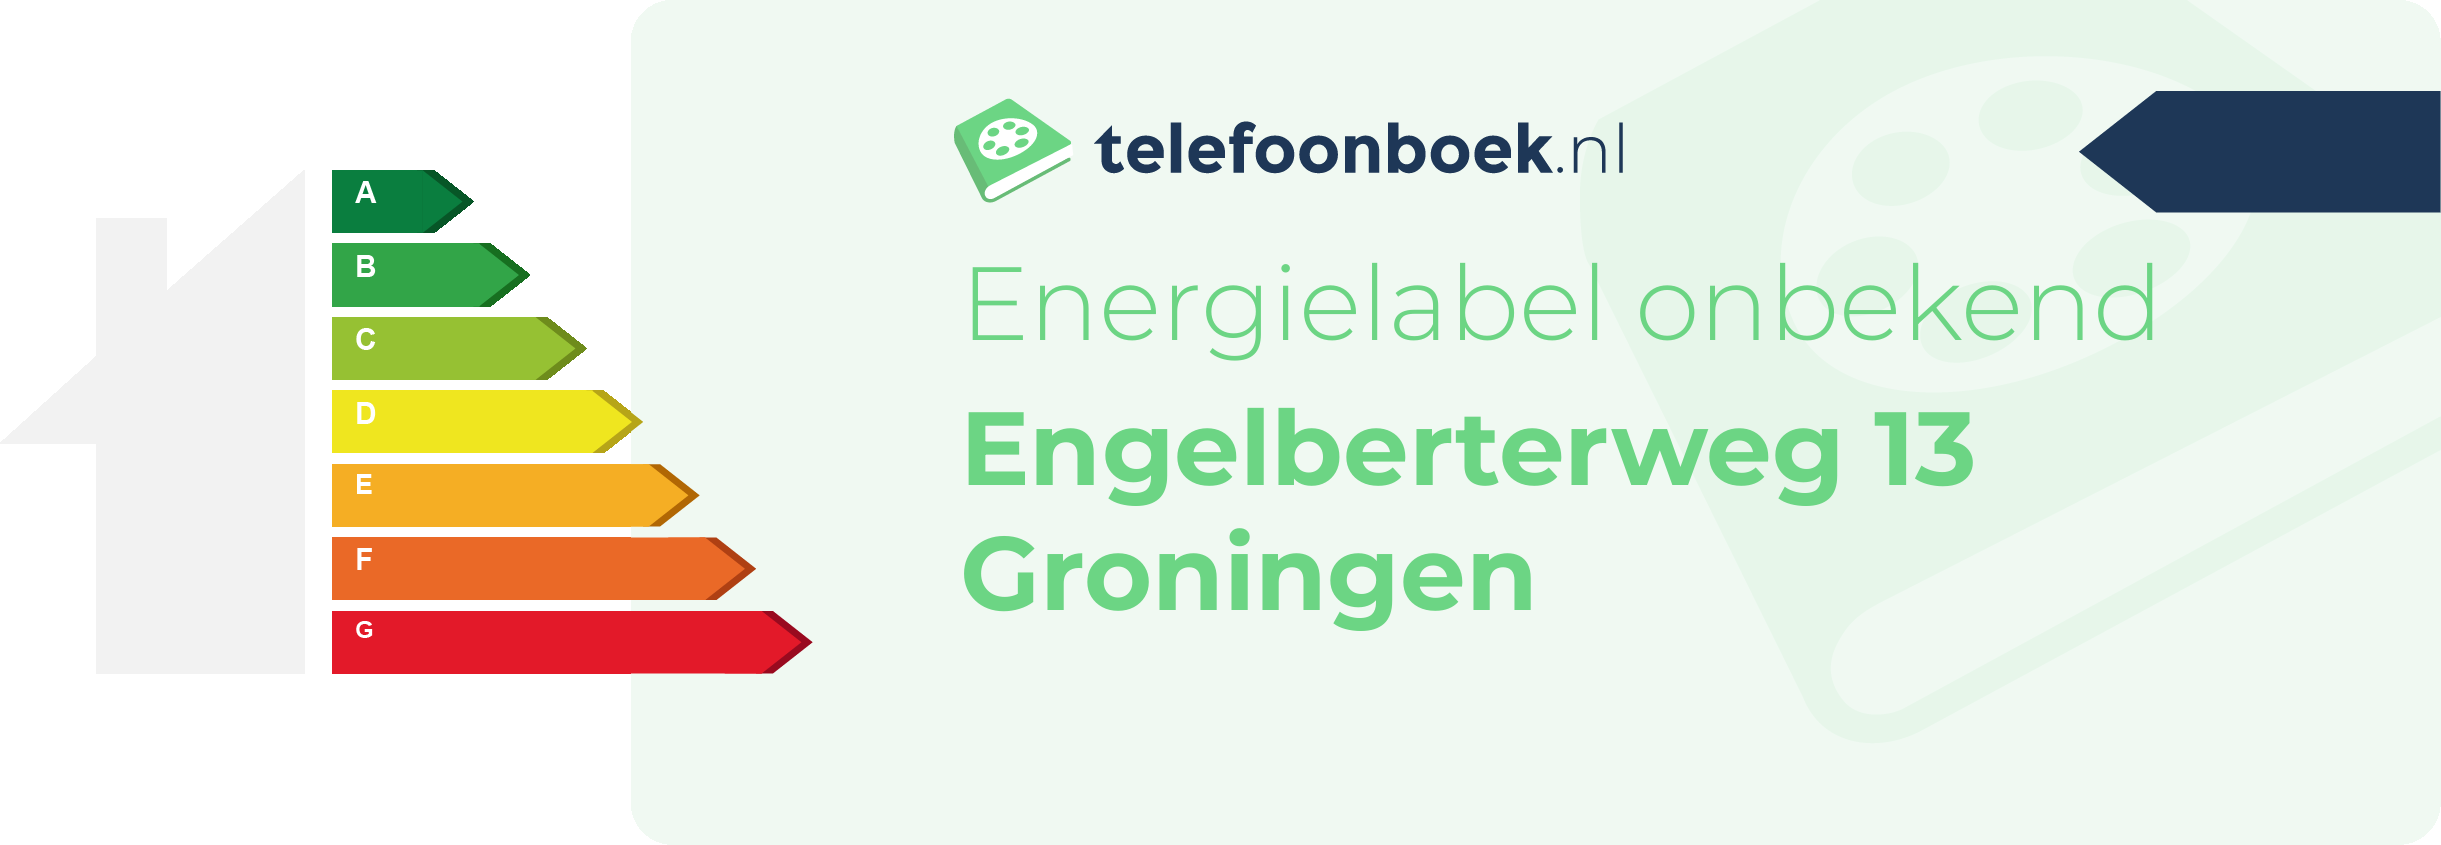 Energielabel Engelberterweg 13 Groningen